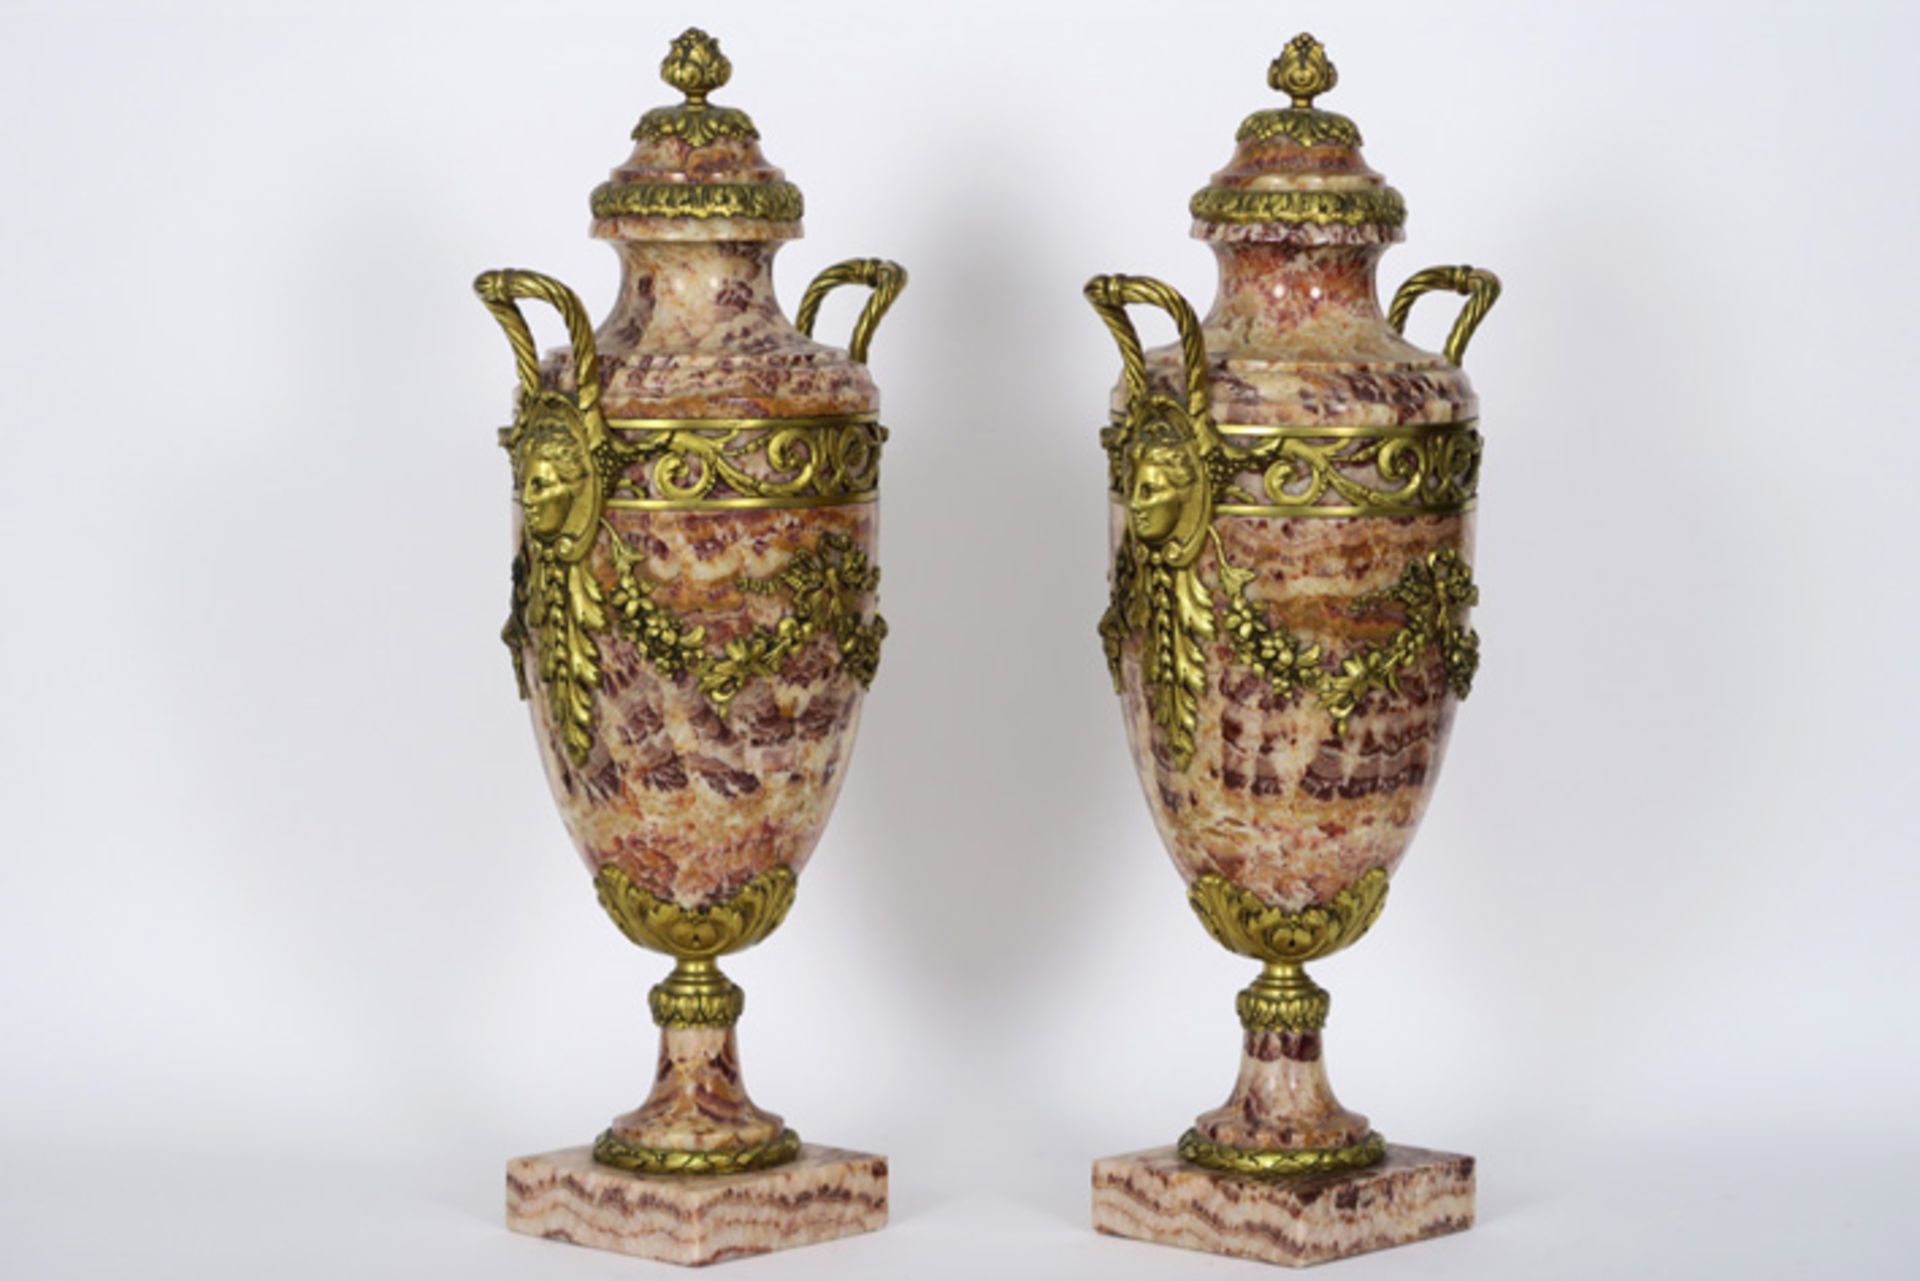 Paar vrij grote, antieke neoclassicistische cassoletvazen in marmer met een rijke [...] - Bild 2 aus 3